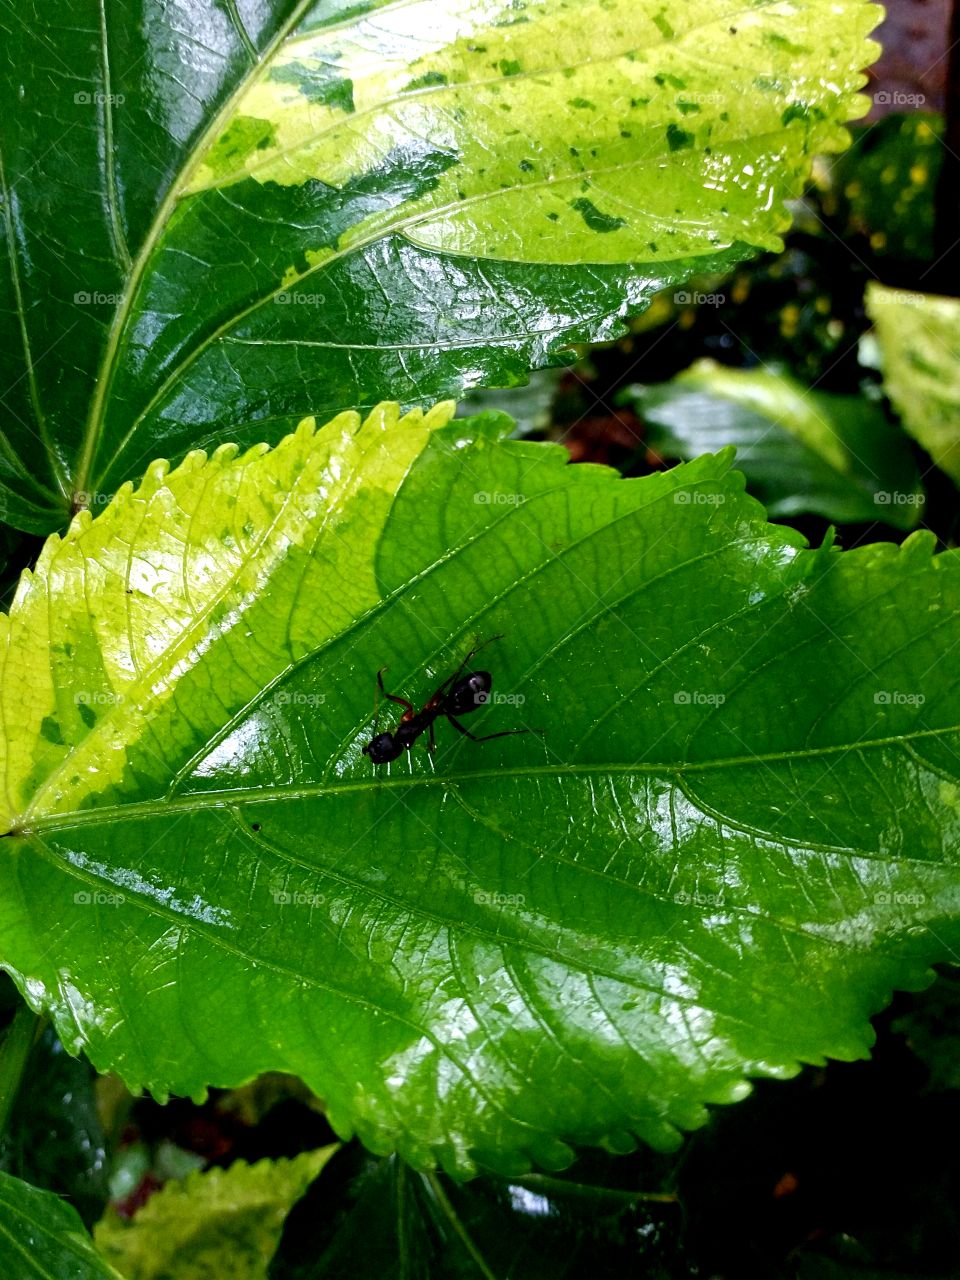 black carpenter ant on leaf